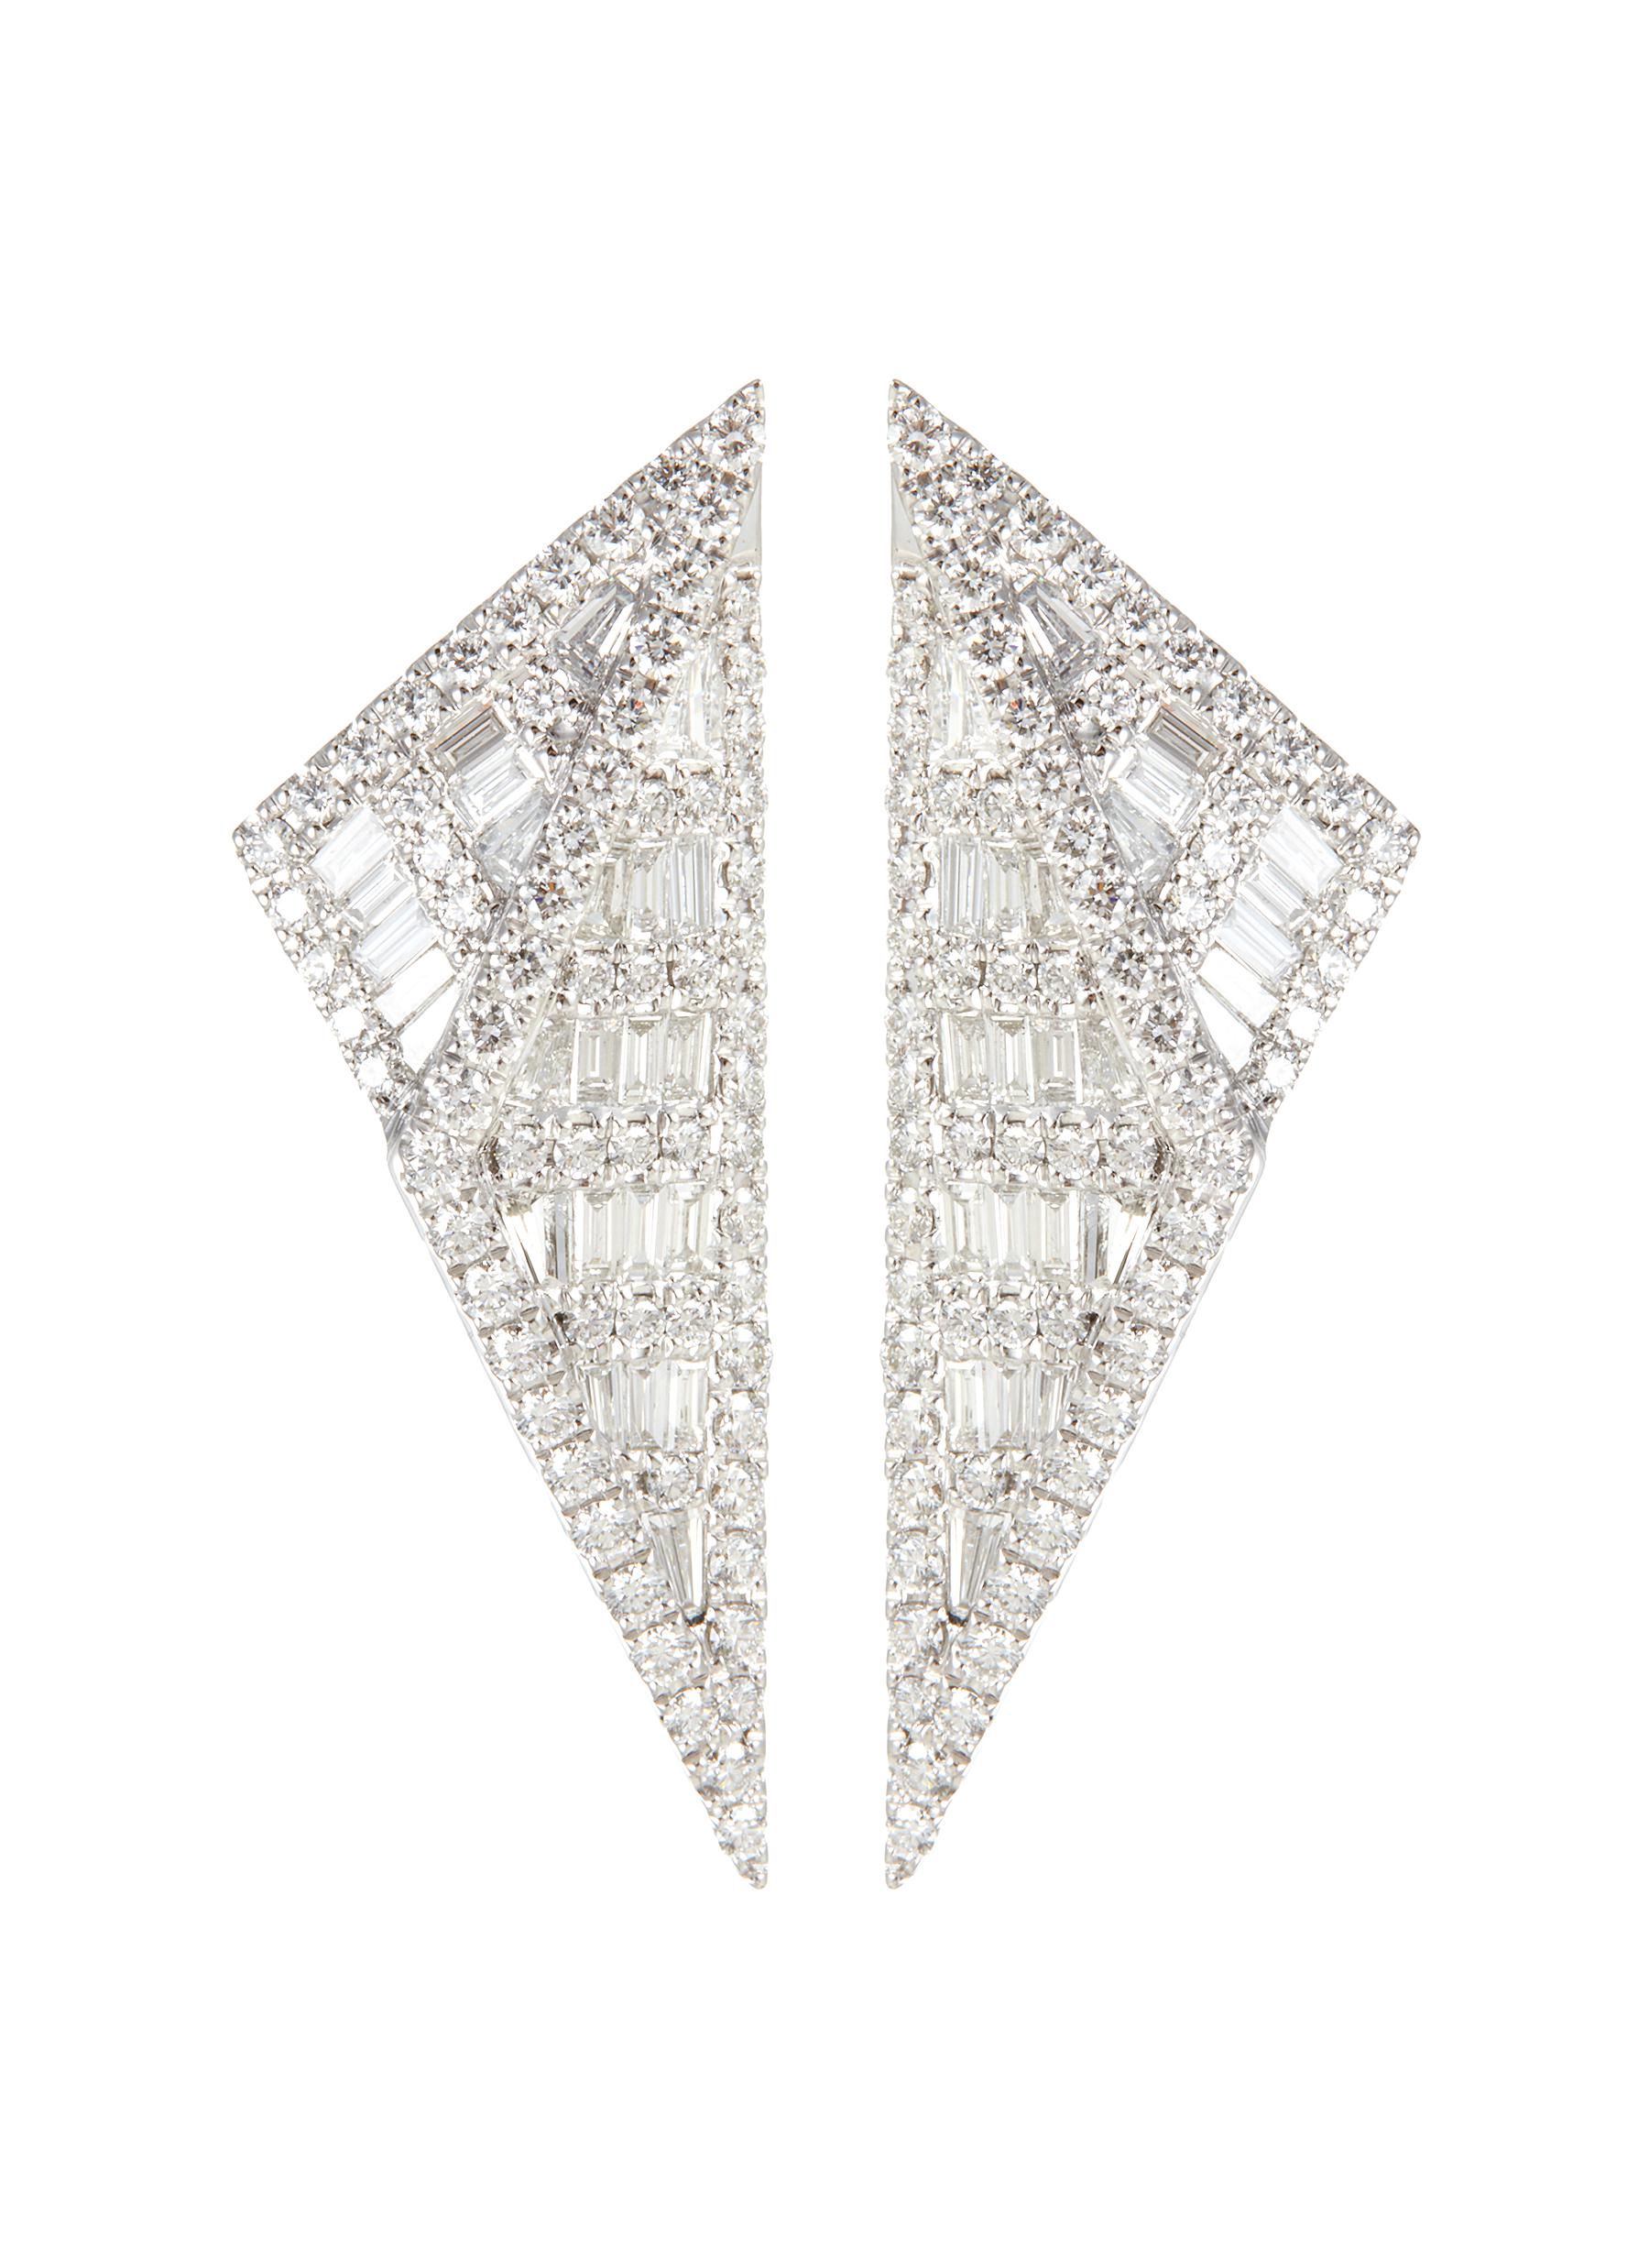 KAVANT & SHARART ‘Origami' Diamond 18K White Gold Earrings